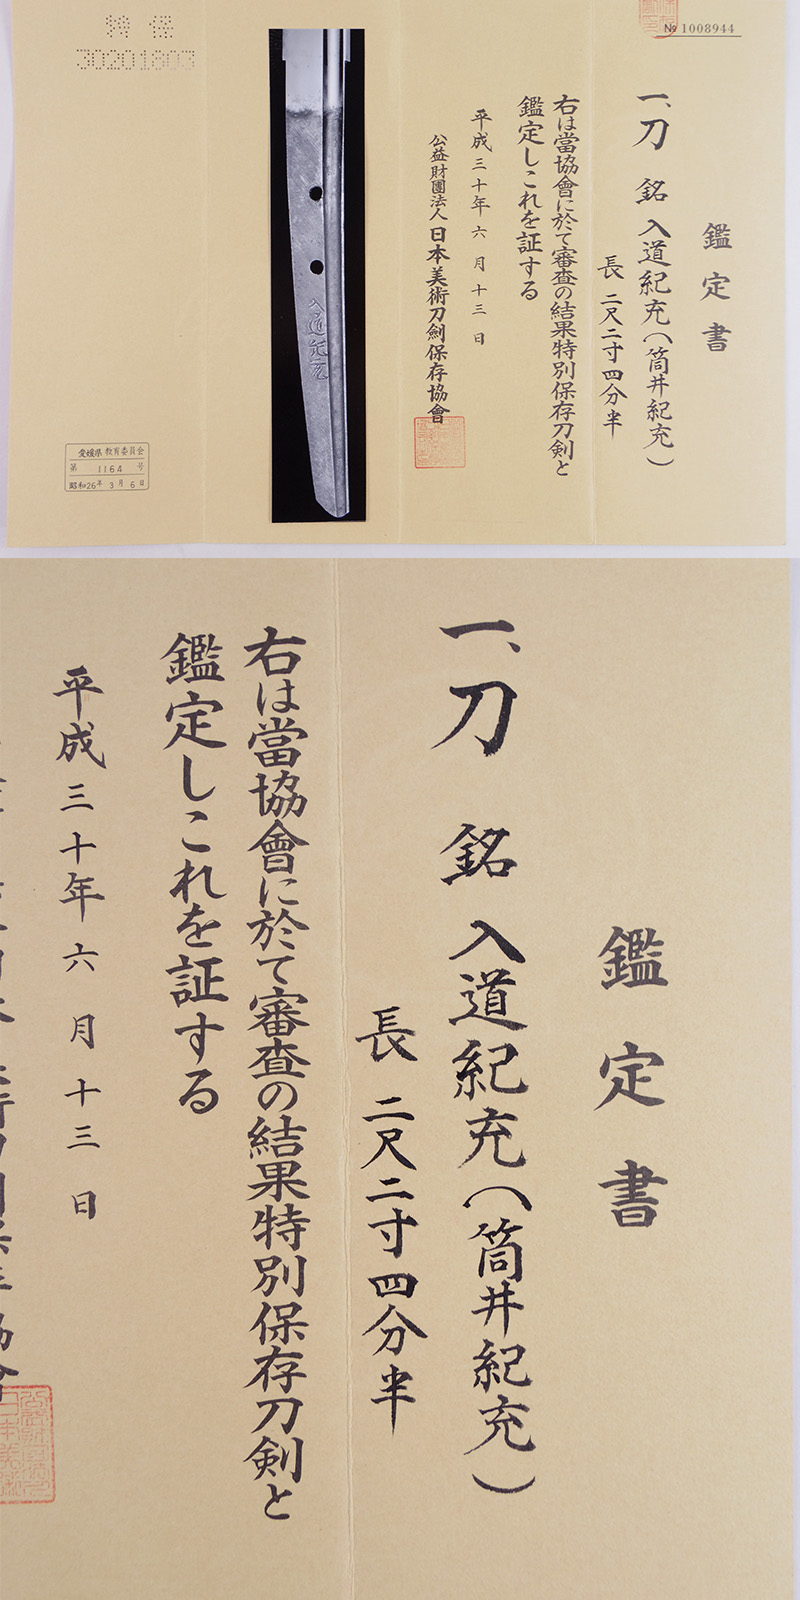 刀　入道紀充(筒井紀充)　(業物) Picture of Certificate